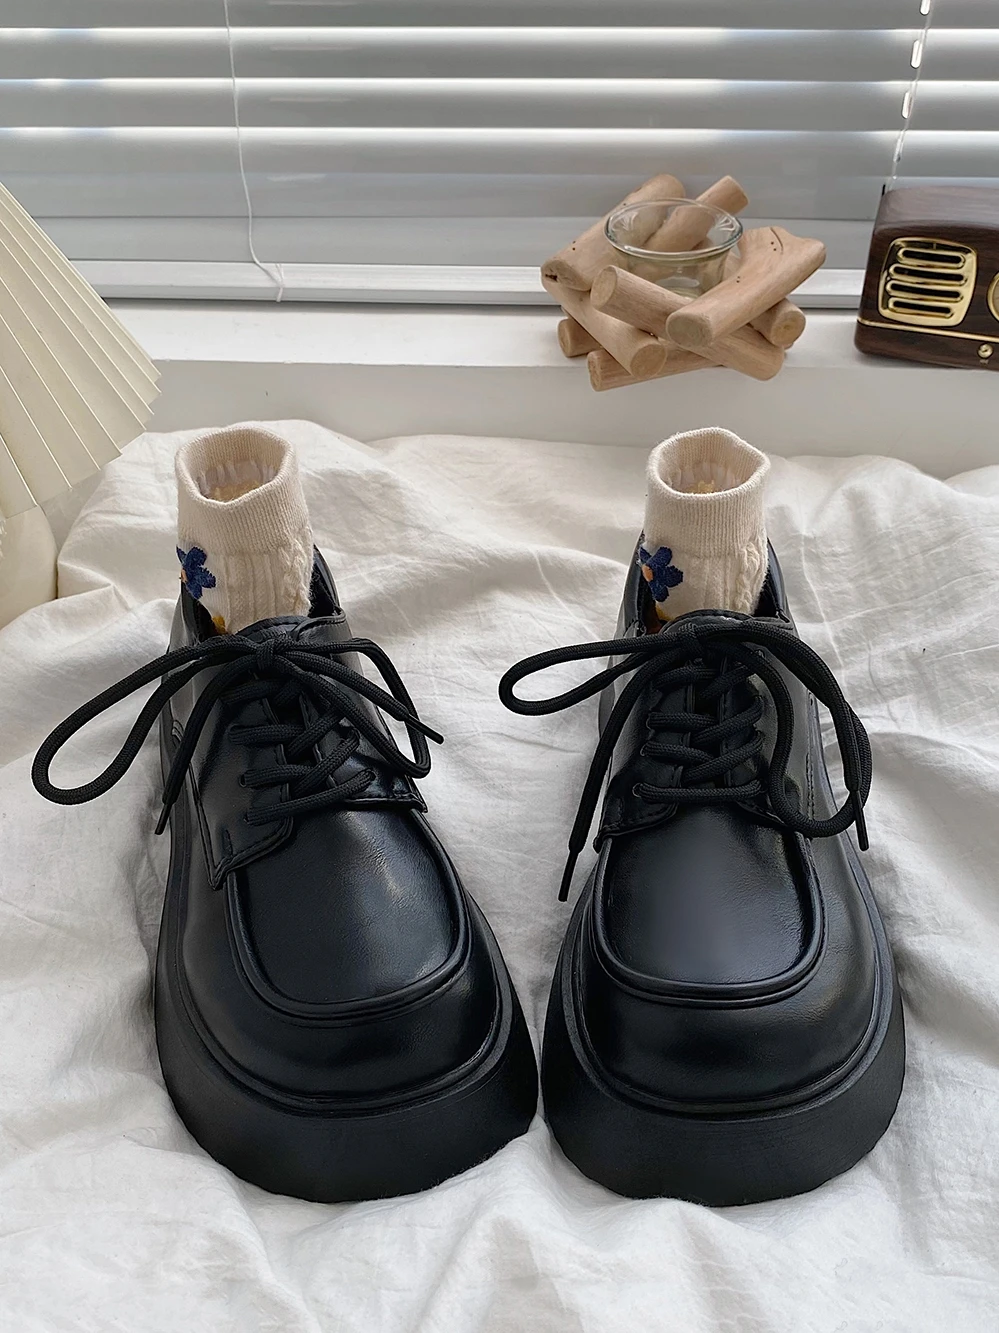 

Женские туфли-оксфорды в британском стиле, черные туфли на платформе, криперы в стиле ретро, осенняя кожаная обувь в стиле преппи